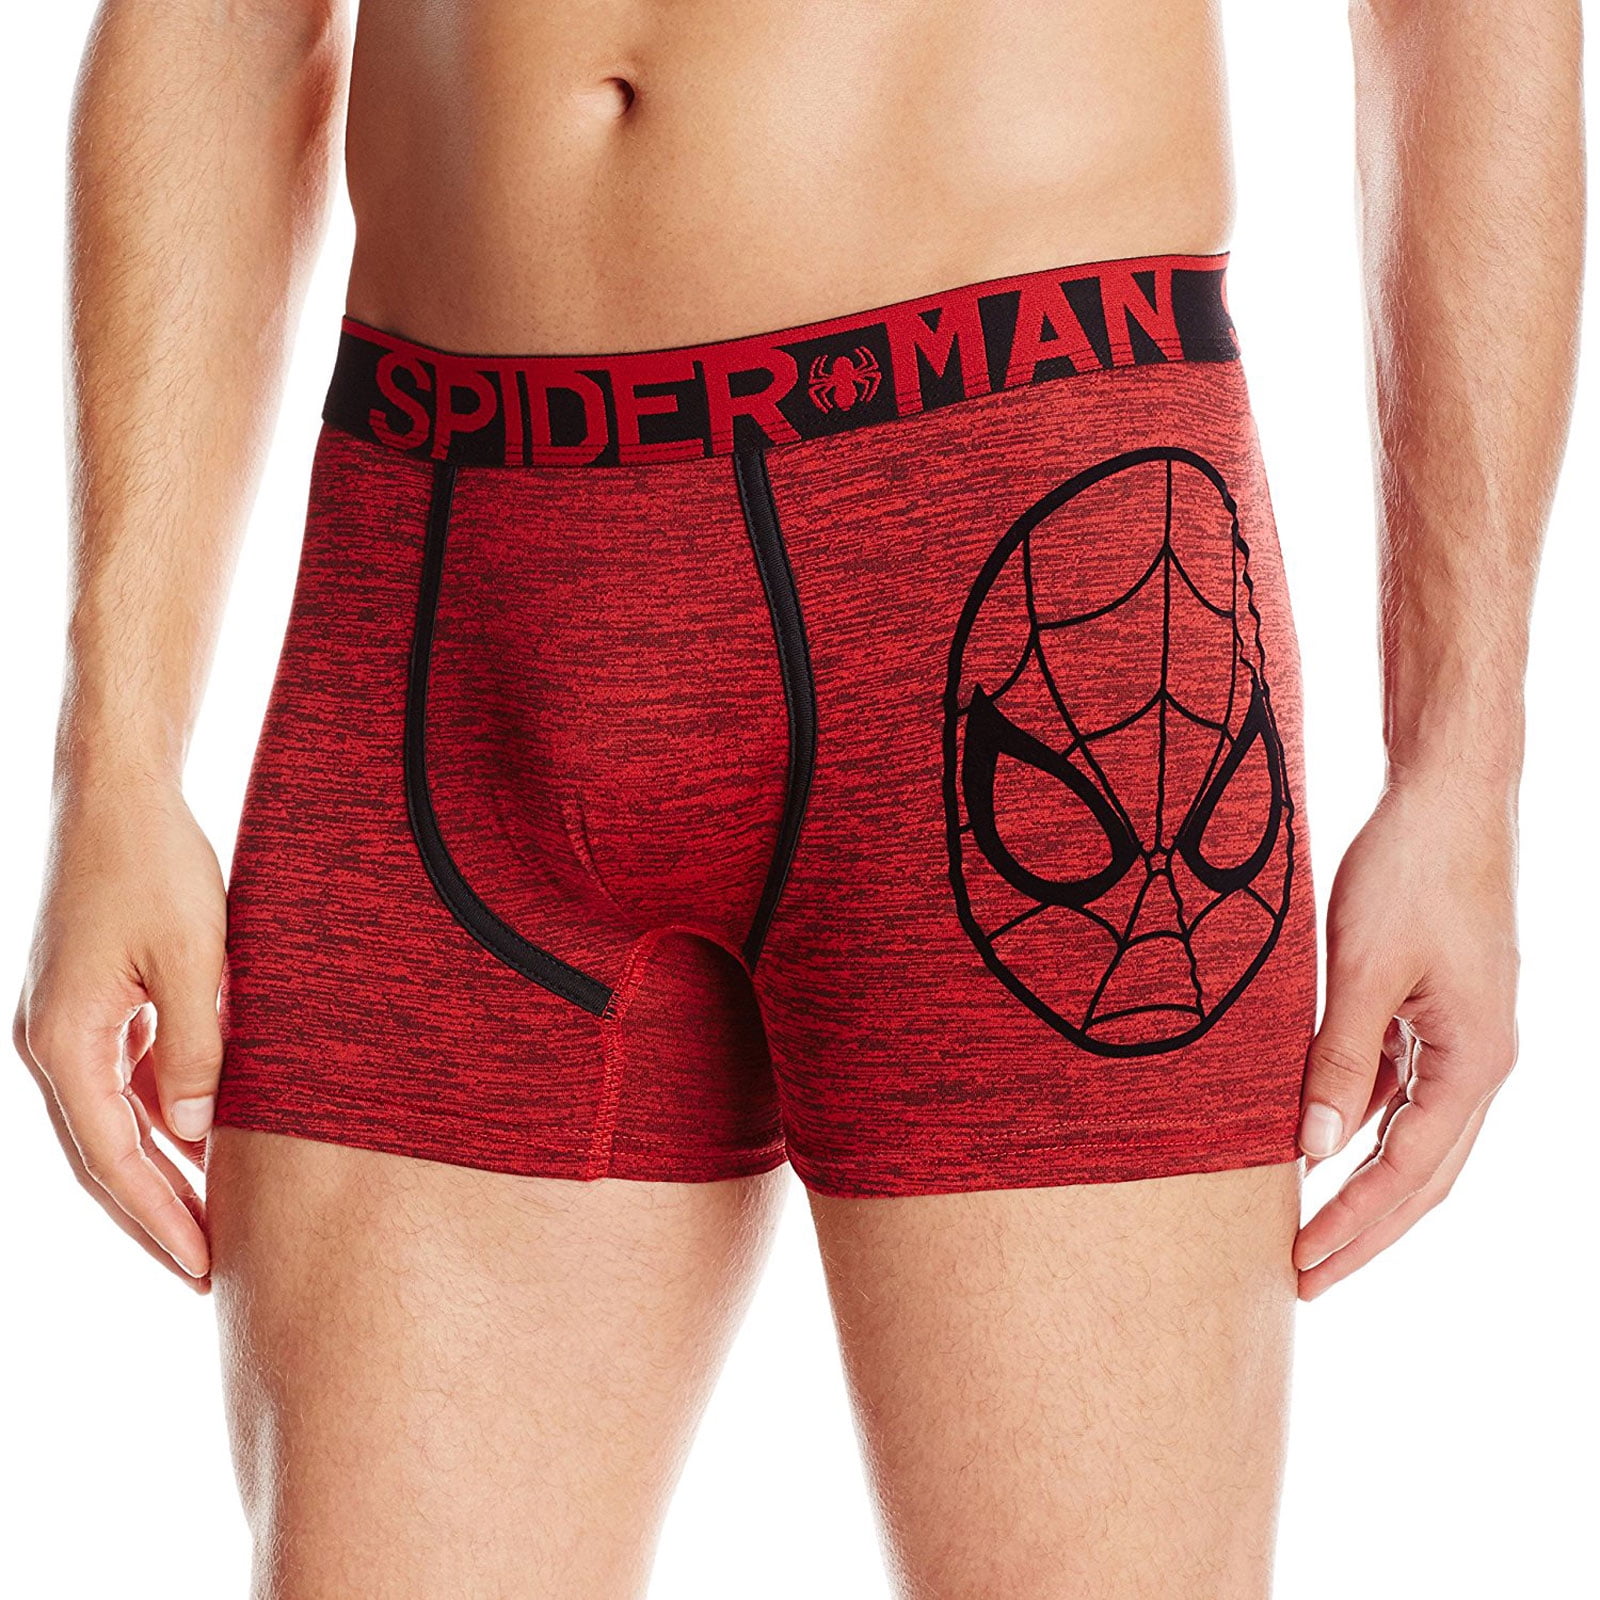 Spiderman Underwear, Mens Spiderman Underwear, Spider Sense Danger